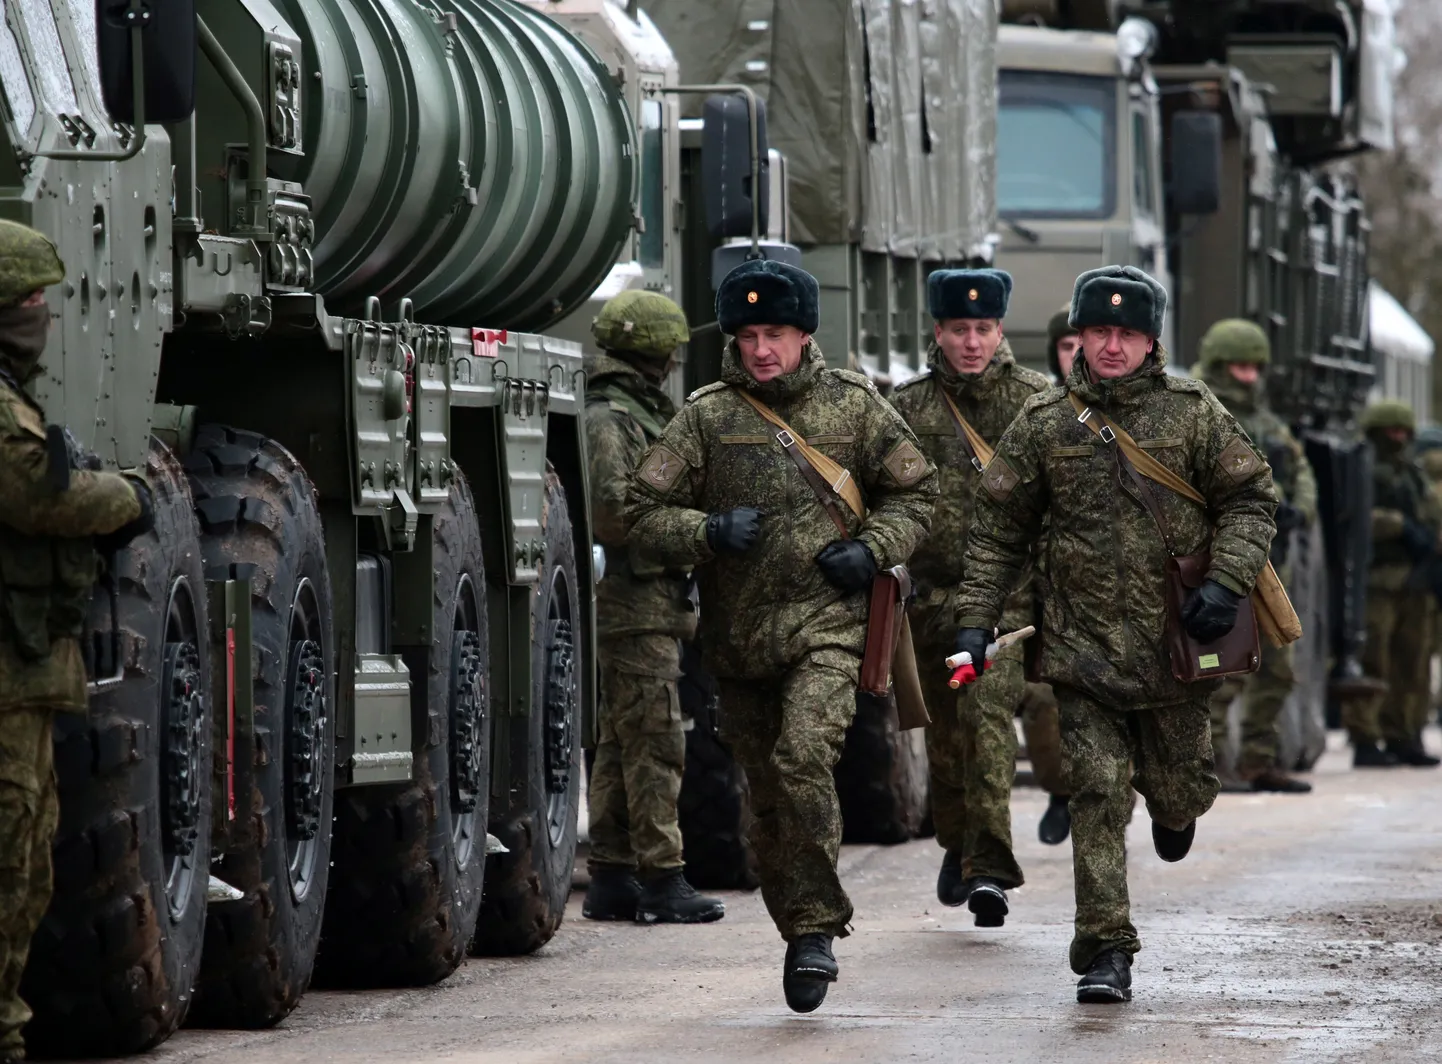 Venemaa sõdurid Krimmis, mille Venemaa anastas 2014 Ukrainalt